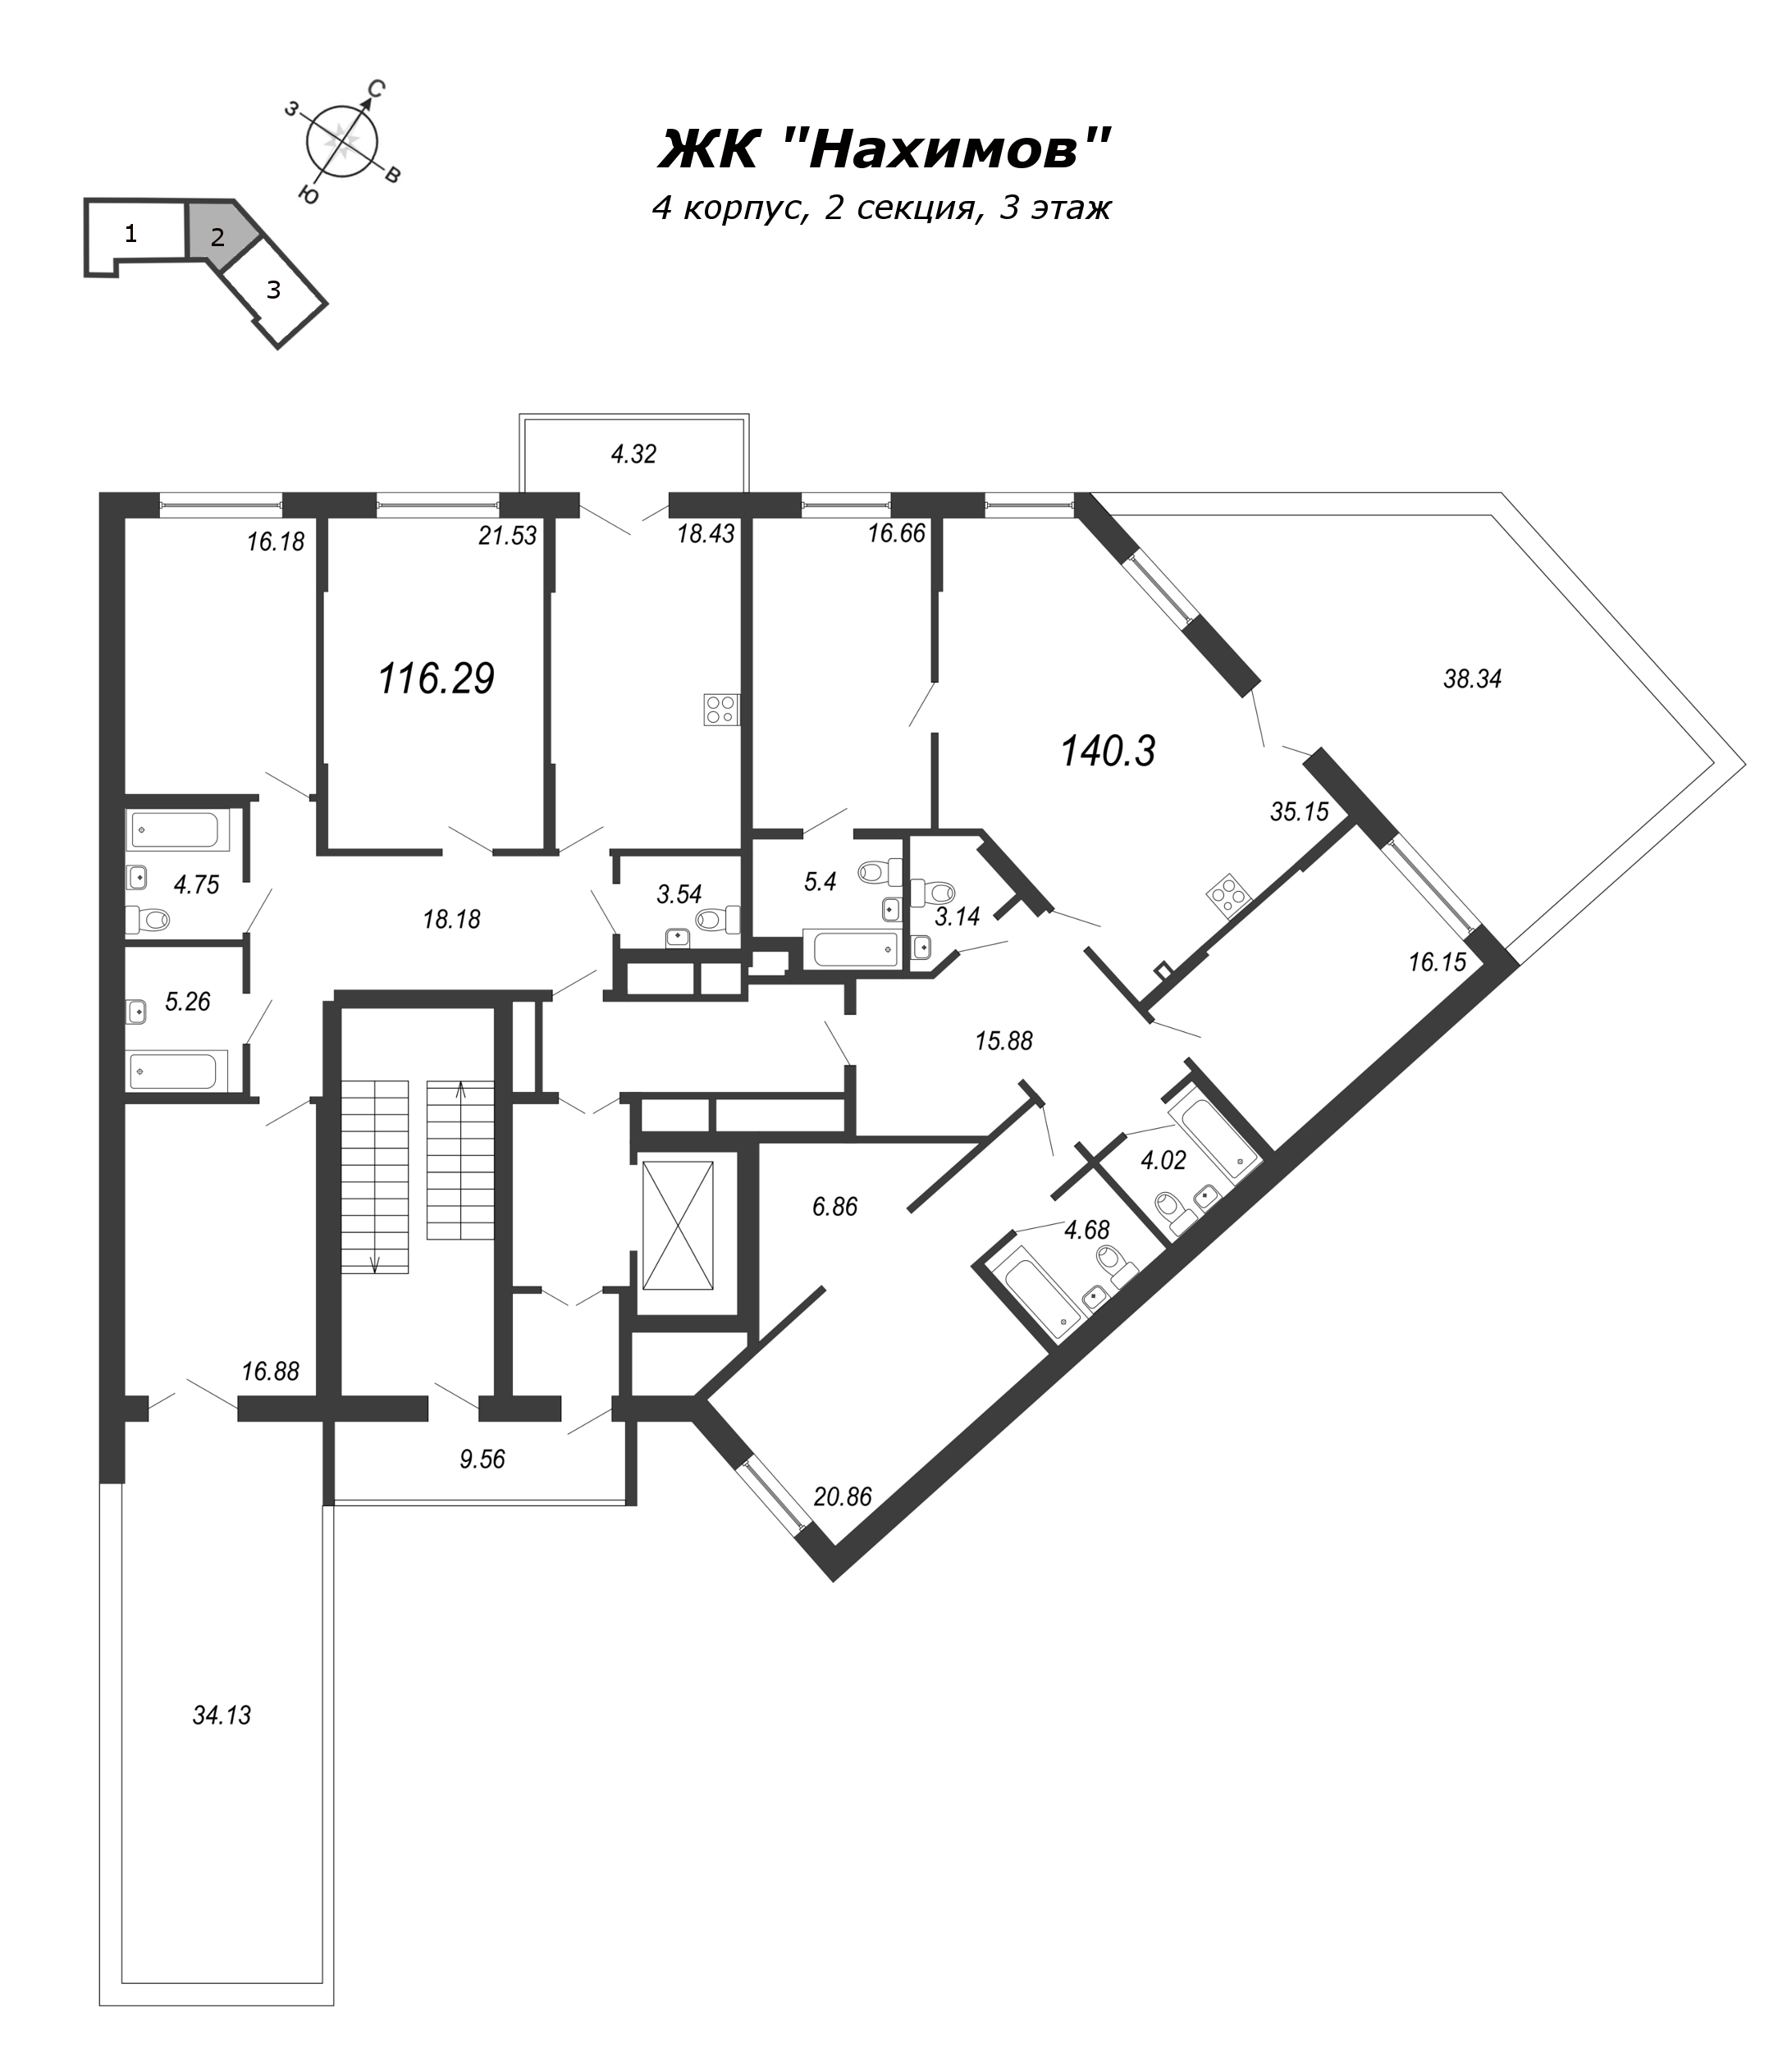 3-комнатная квартира, 116.6 м² в ЖК "Нахимов" - планировка этажа